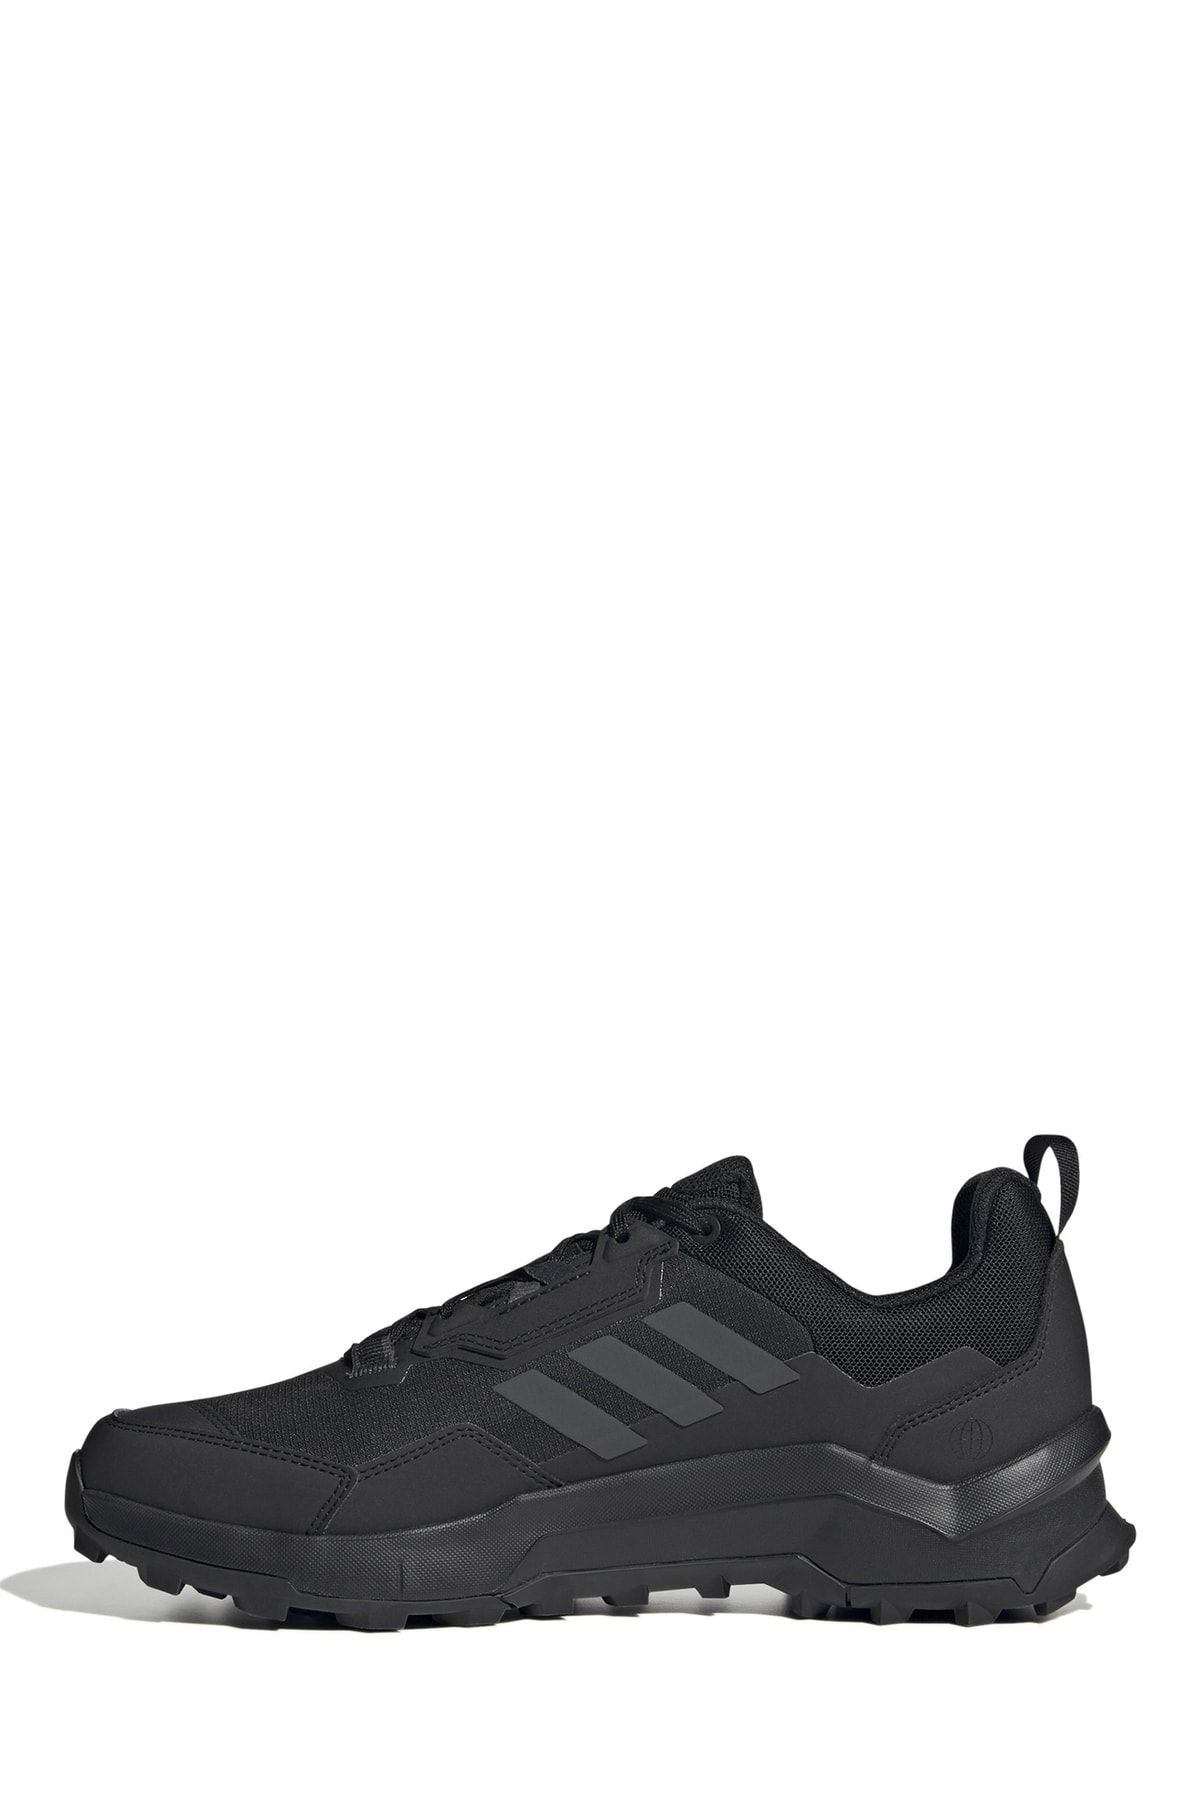 adidas Siyah - Karbon Erkek Outdoor Ayakkabısı Hp7395 Terrex Ax4 Gtx